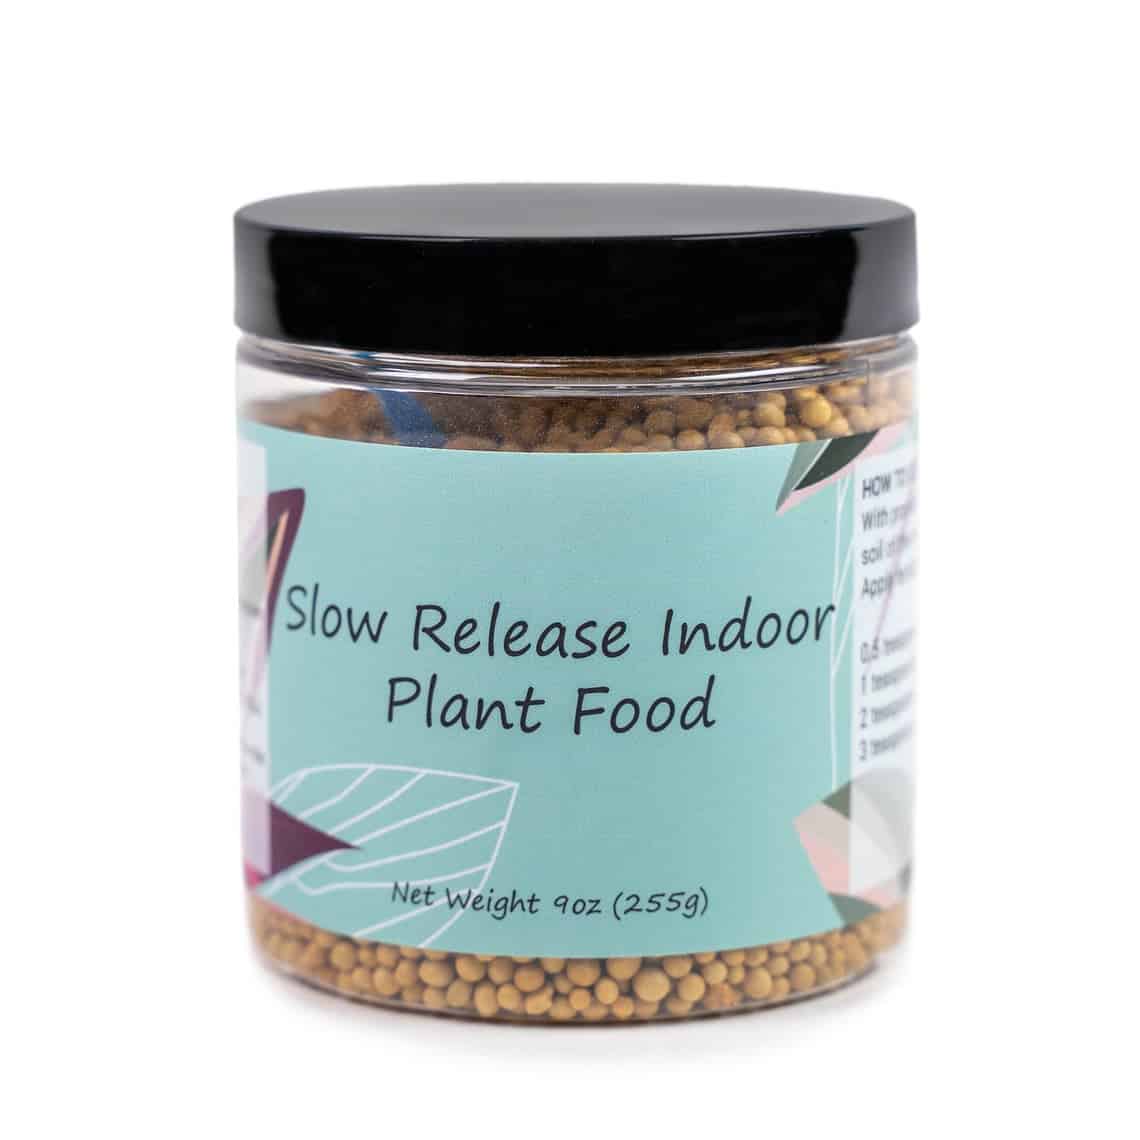 Slow Release Indoor Plant Food